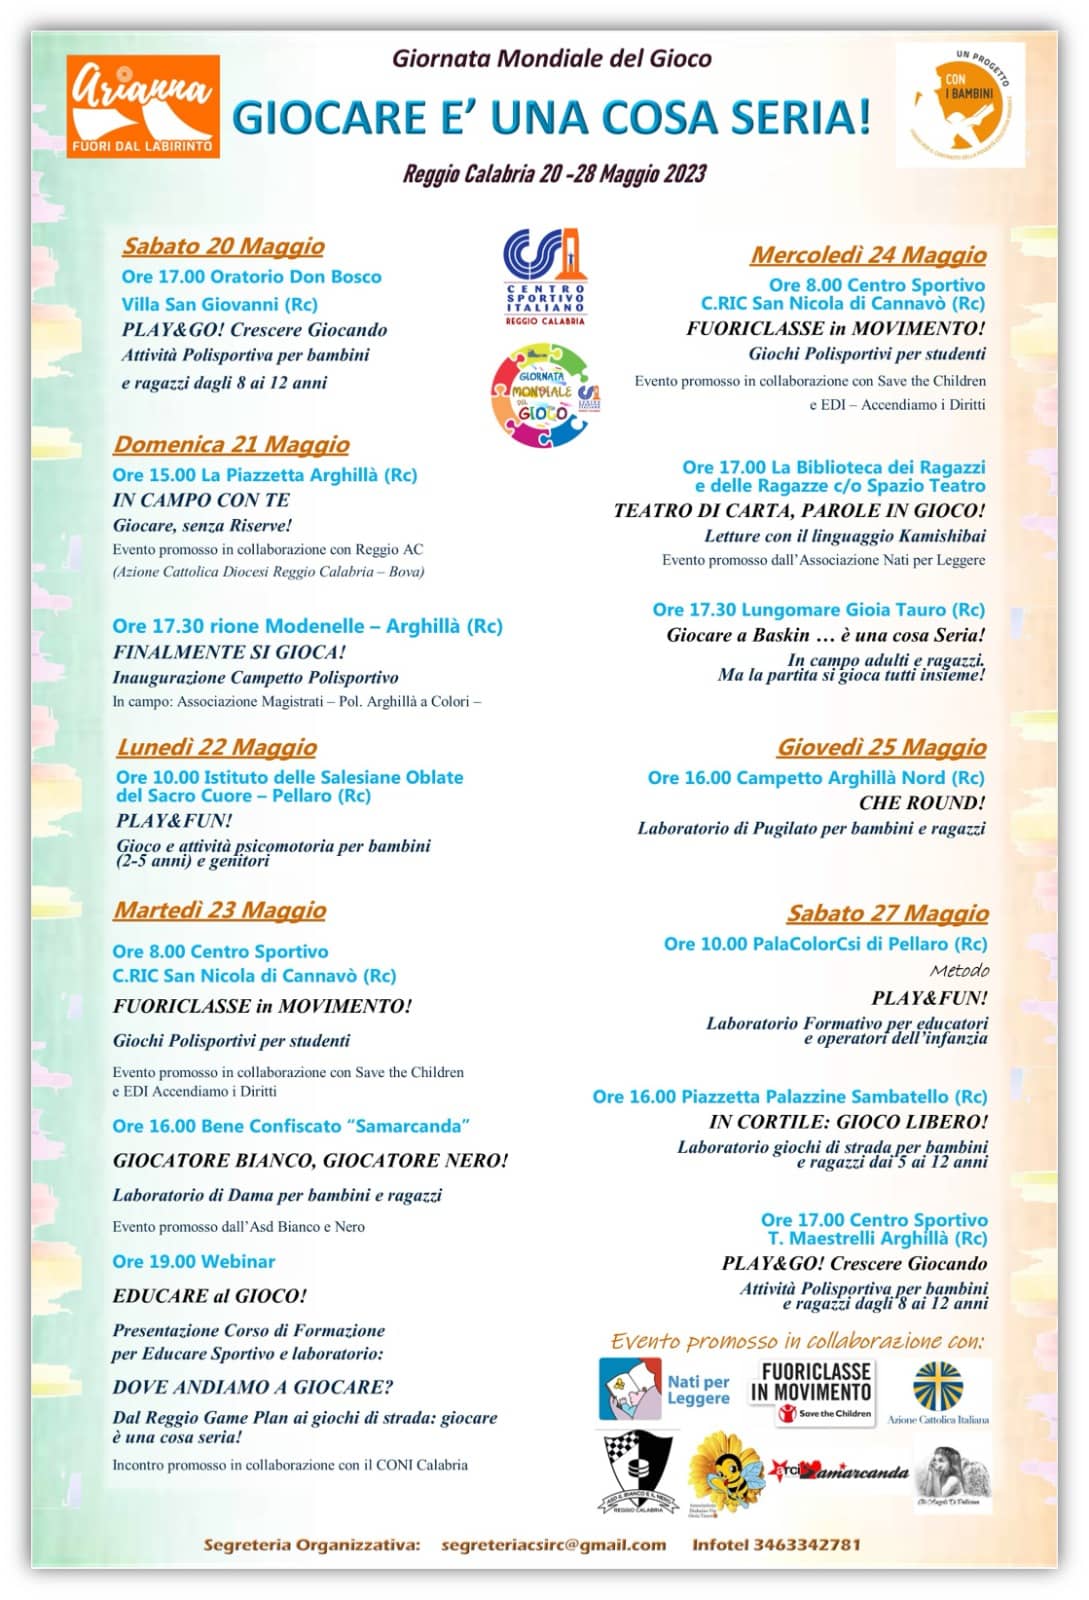 GIORNATA MONDIALE DEL GIOCO! In occasione della Giornata Mondiale del Gioco, a Reggio Calabria, il Festival: “IL GIOCO È UNA COSA SERIA!”.